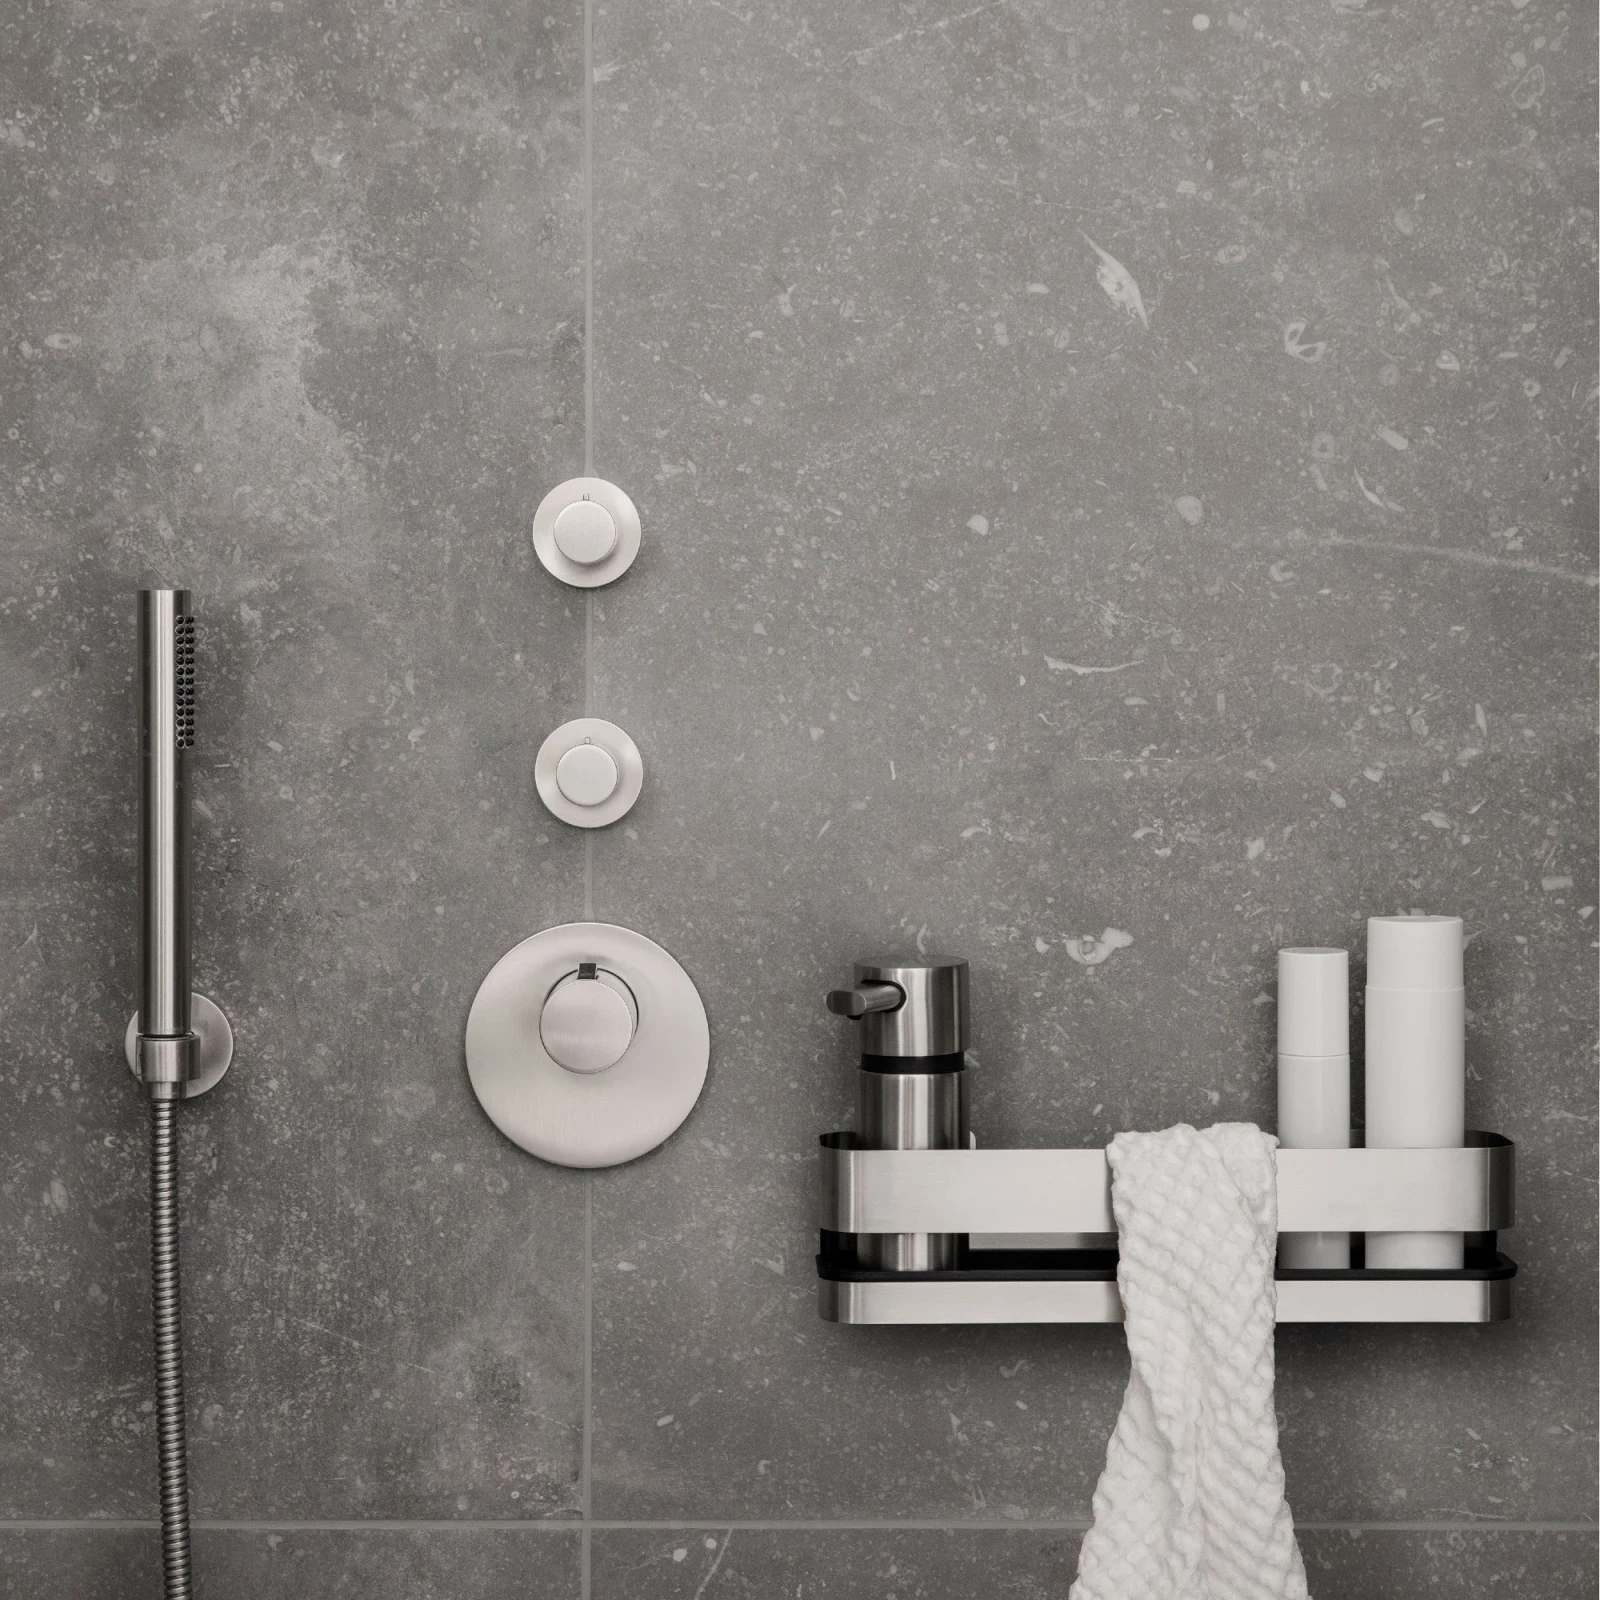 AREO Dusche, Aufbewahrung, Spiegel, Handtuch, Badezimmer, Duschablage